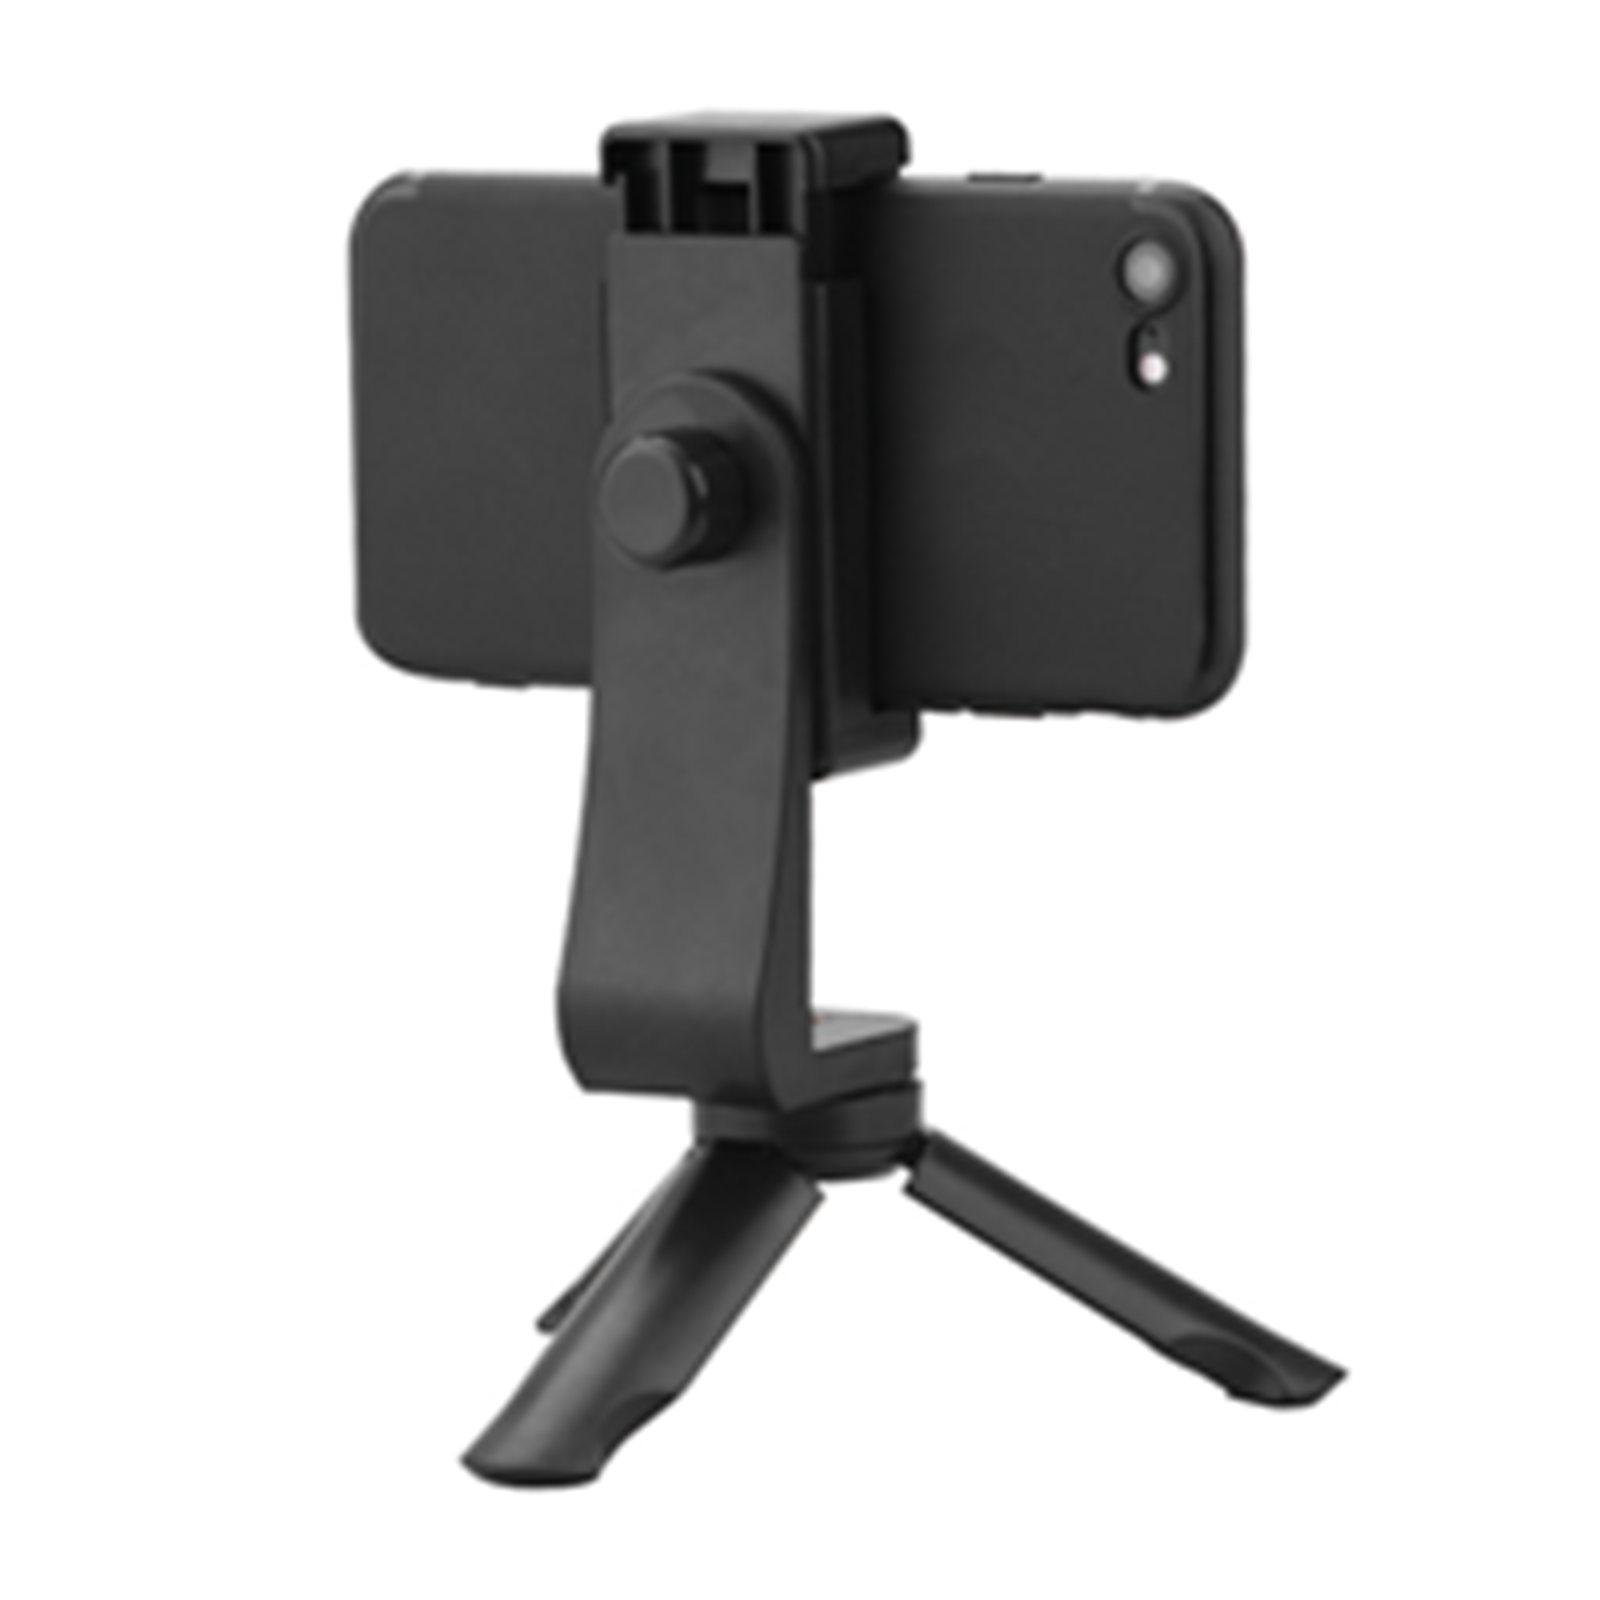 Portable Desktop Tripod for Photography Vlog DSLR Camera Set of 2